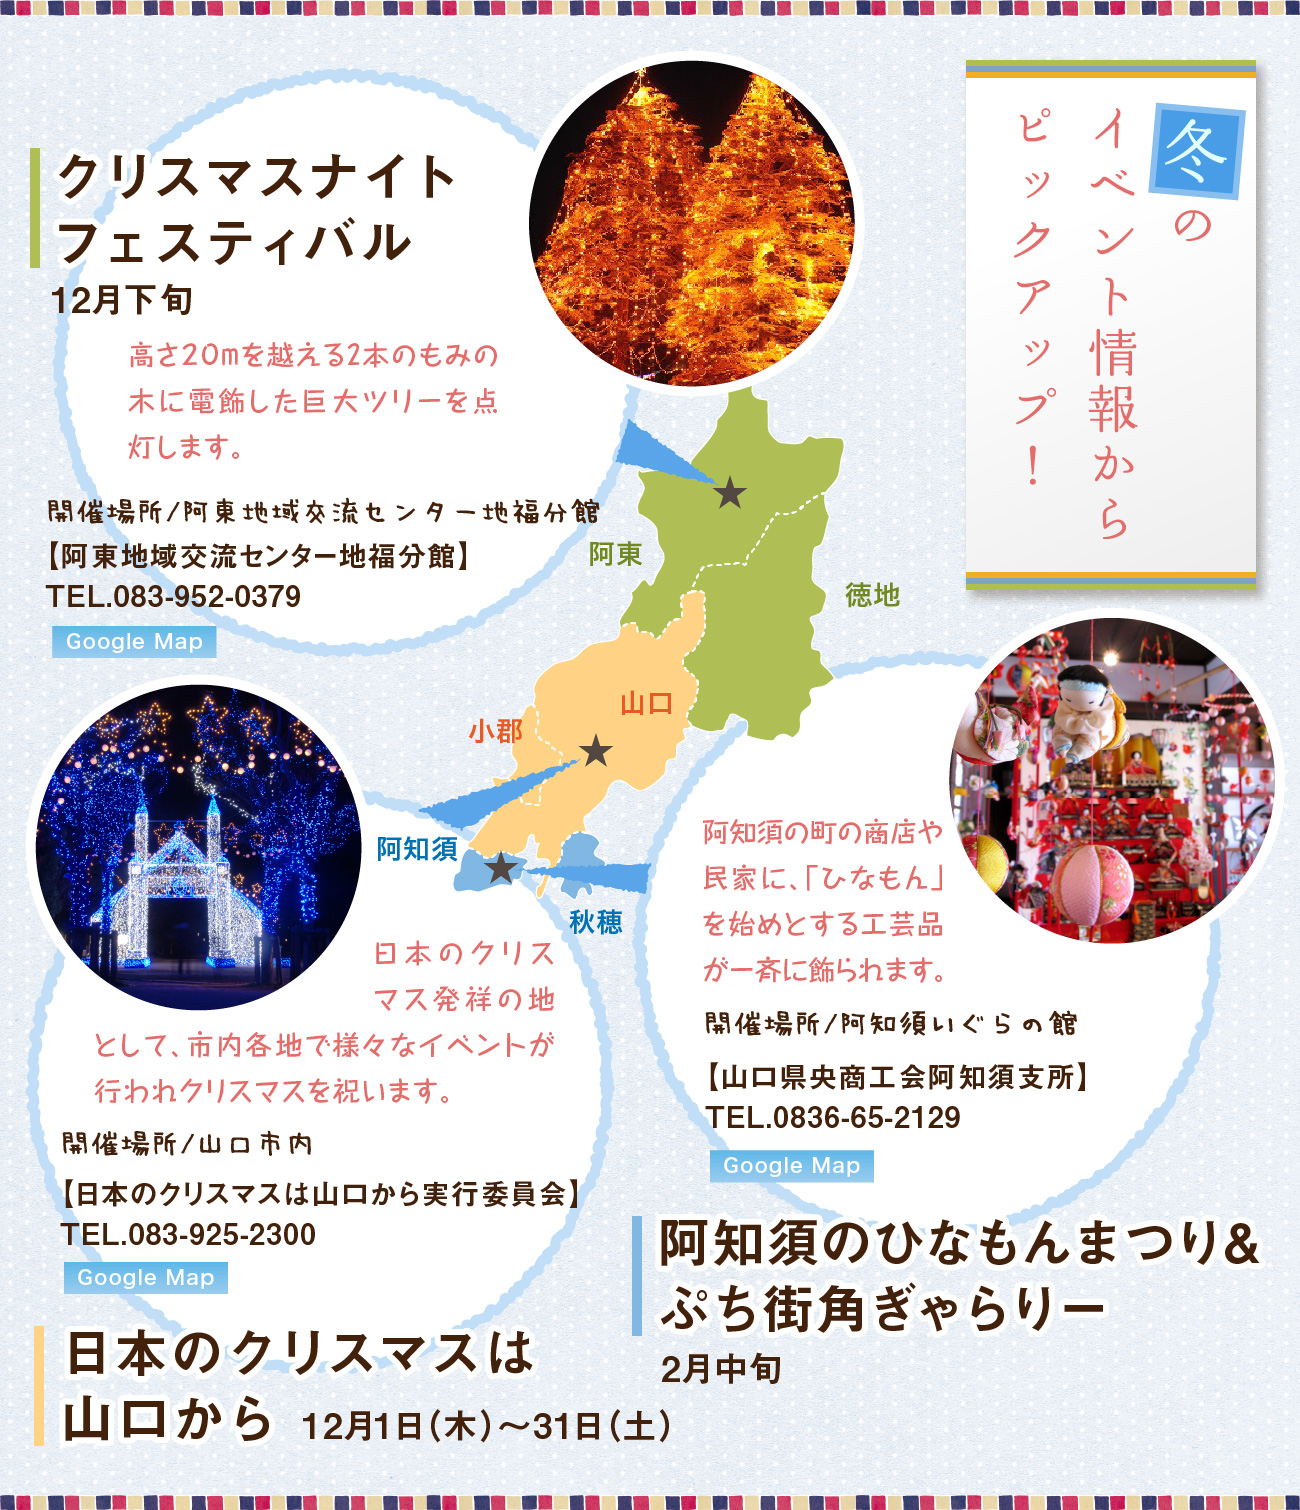 冬のイベント情報からピックアップ！、クリスマスナイトフェスティバル、日本のクリスマスは山口から、阿知須ひなもんまつり&街角ぎゃらりー